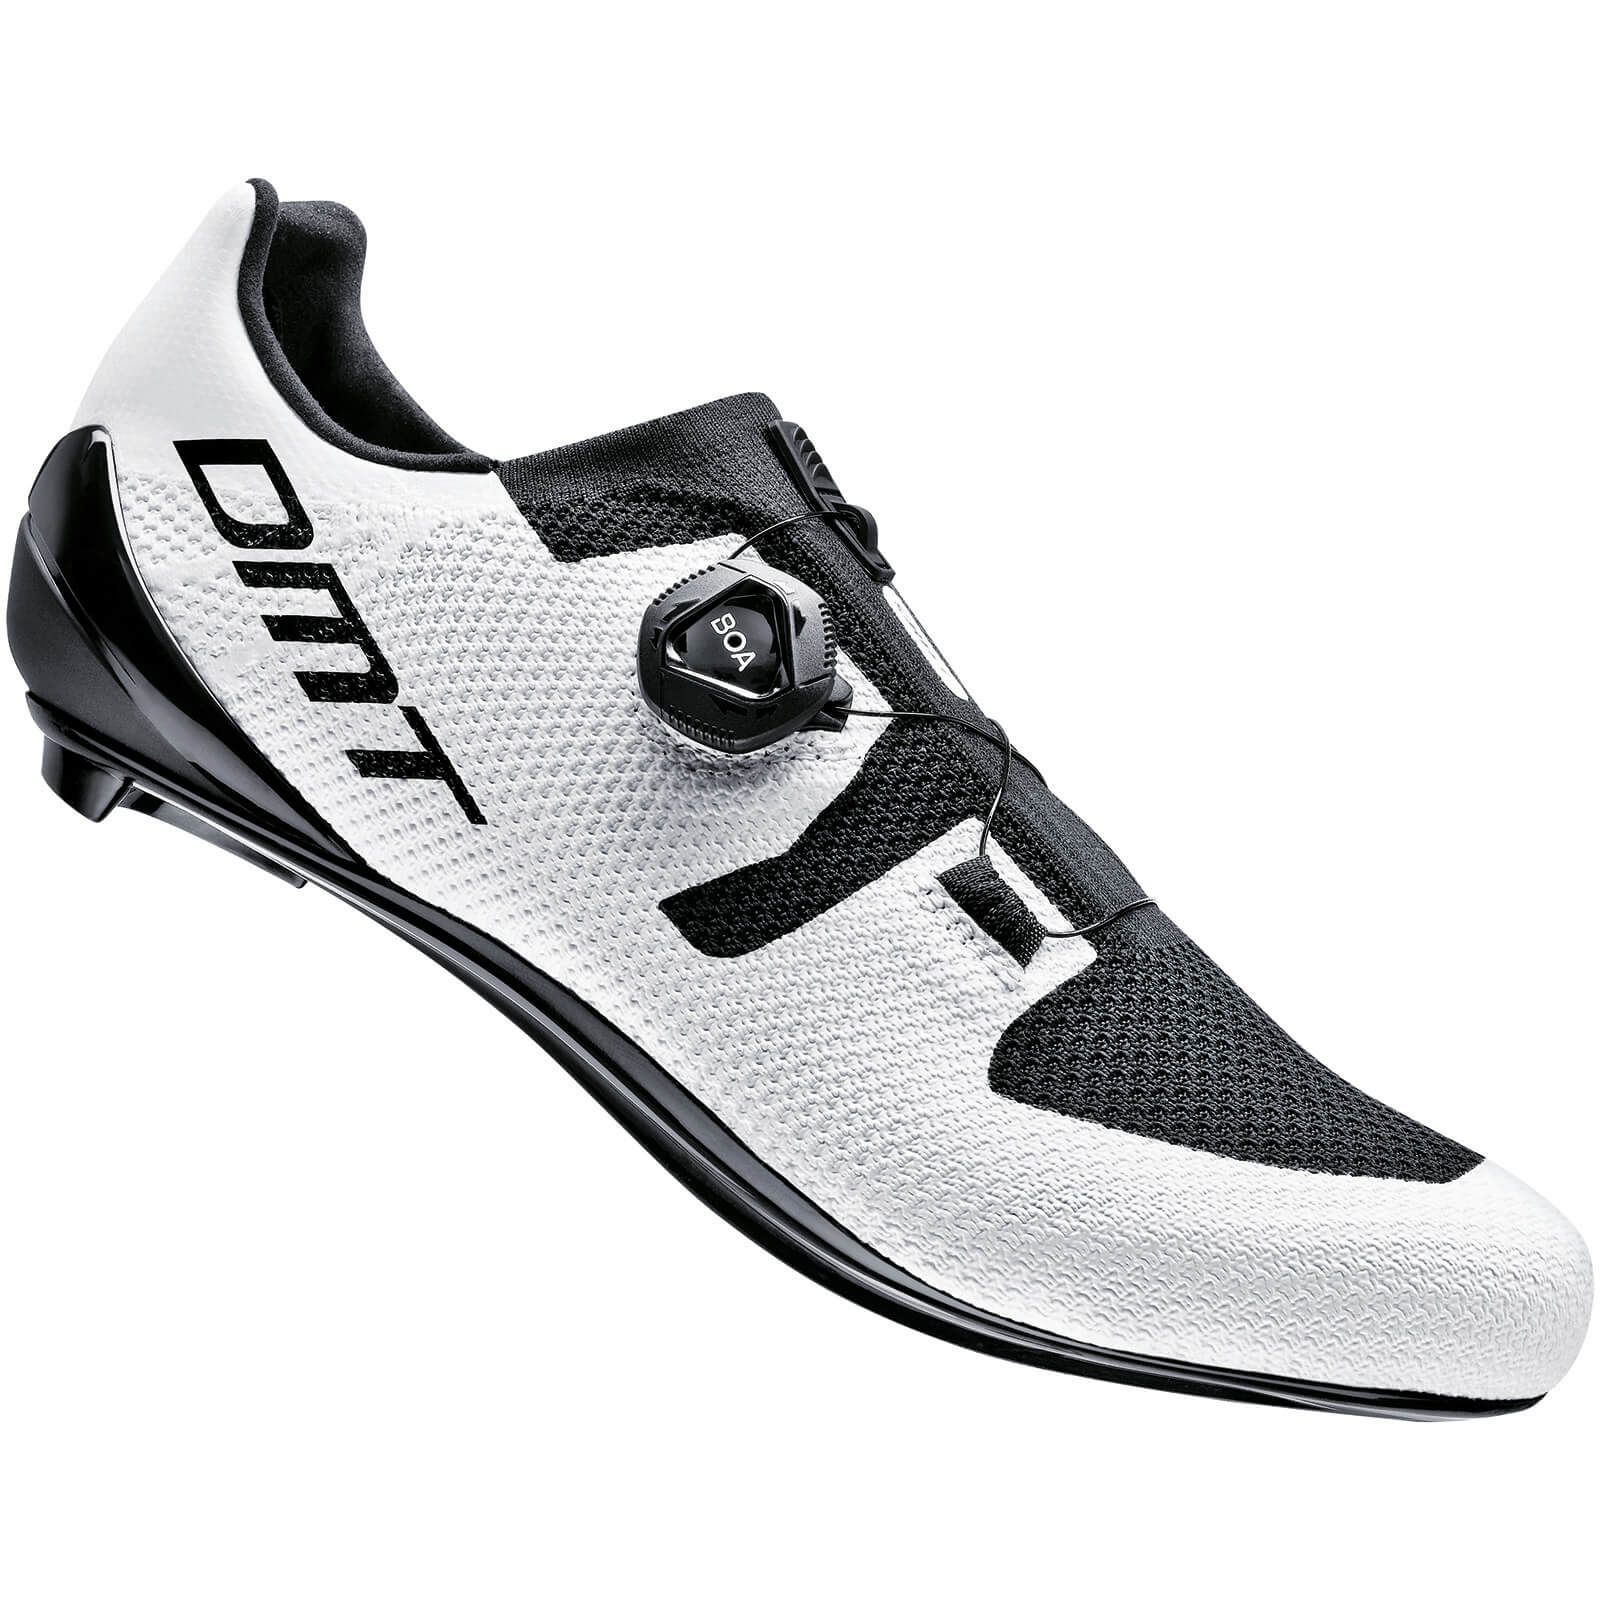 DMT KR3 Road Shoes - EU 42.5 - White/Black